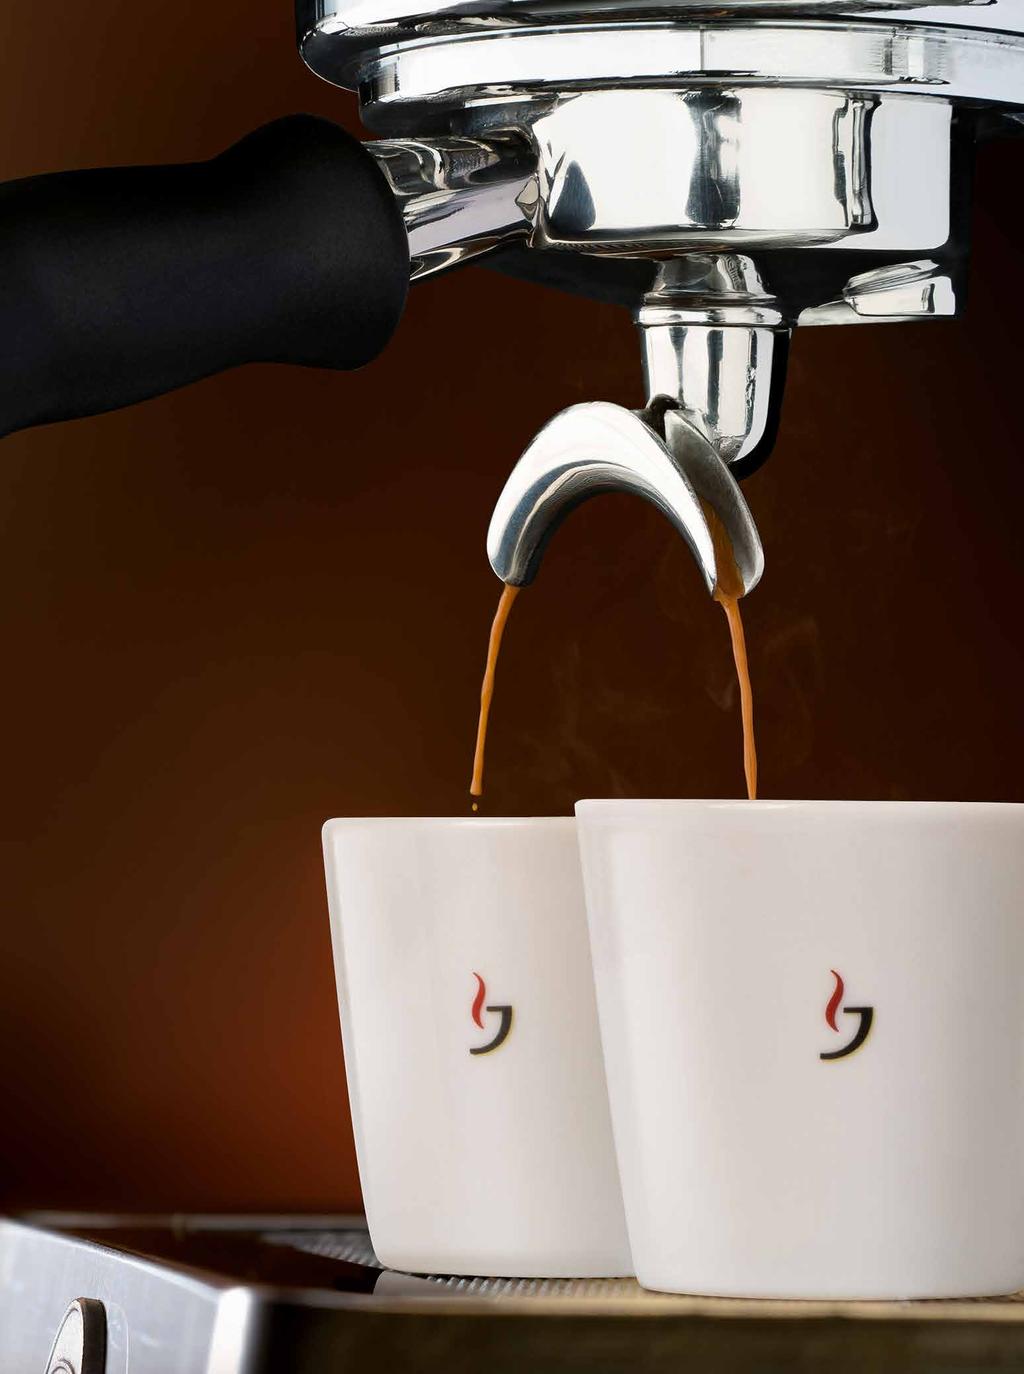 Vielfältiges Produkt- und Markenportfolio für alle Kaffeekategorien Höchster Kaffeegenuss Mit Caffè Crema und Espresso setzen Sie auf beste Barista-Qualität für die professionelle Zubereitung.